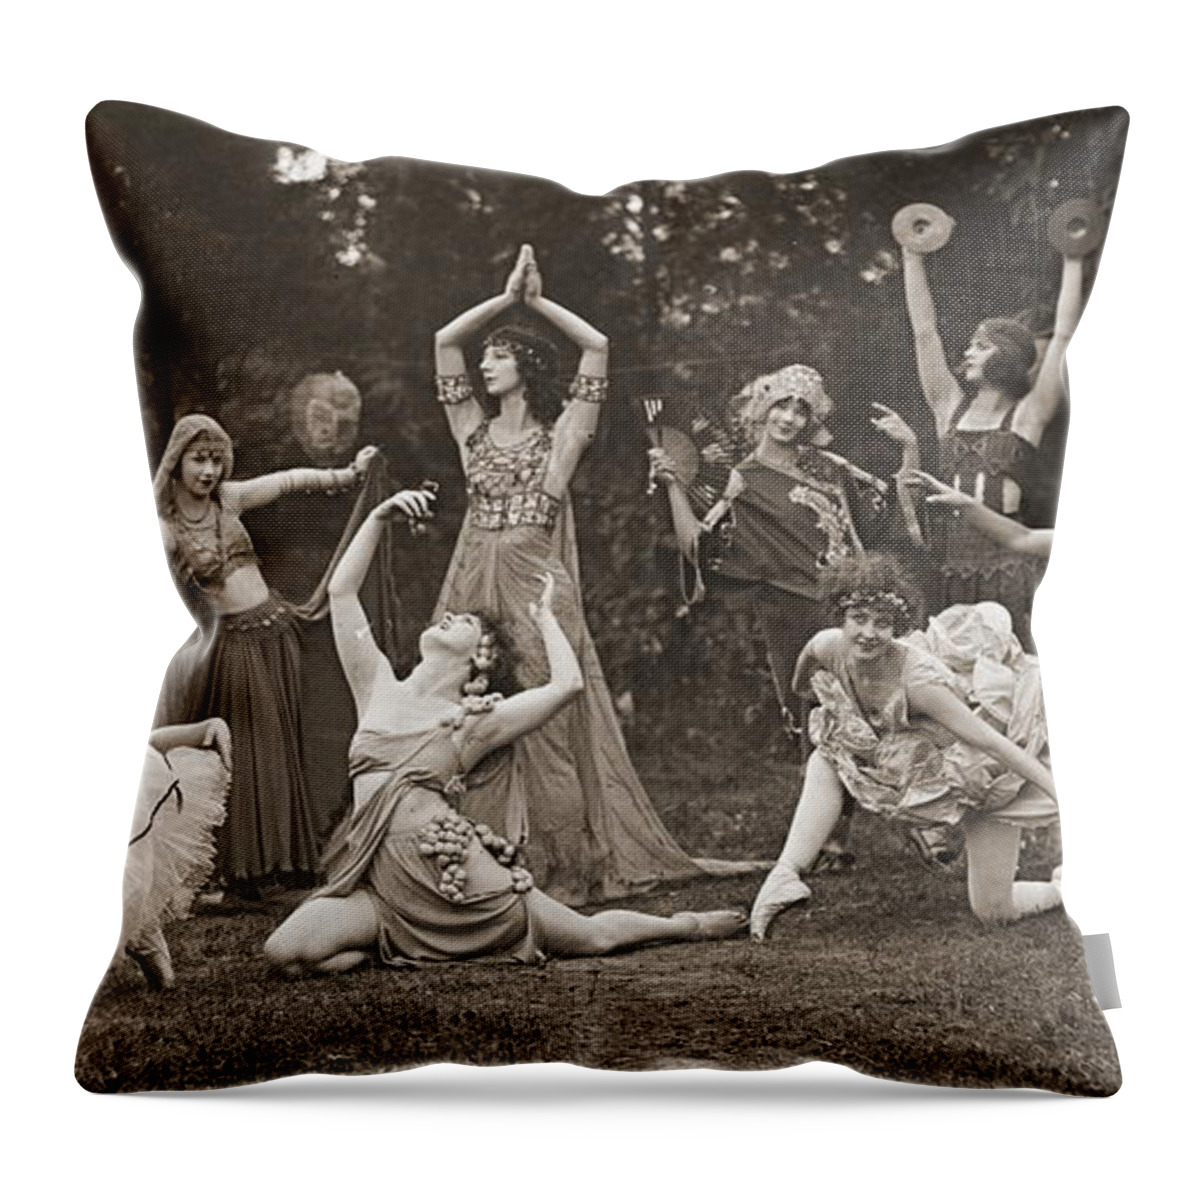 Wild Women Dance 1924 Throw Pillow featuring the photograph Wild Women Dance 1924 by Padre Art